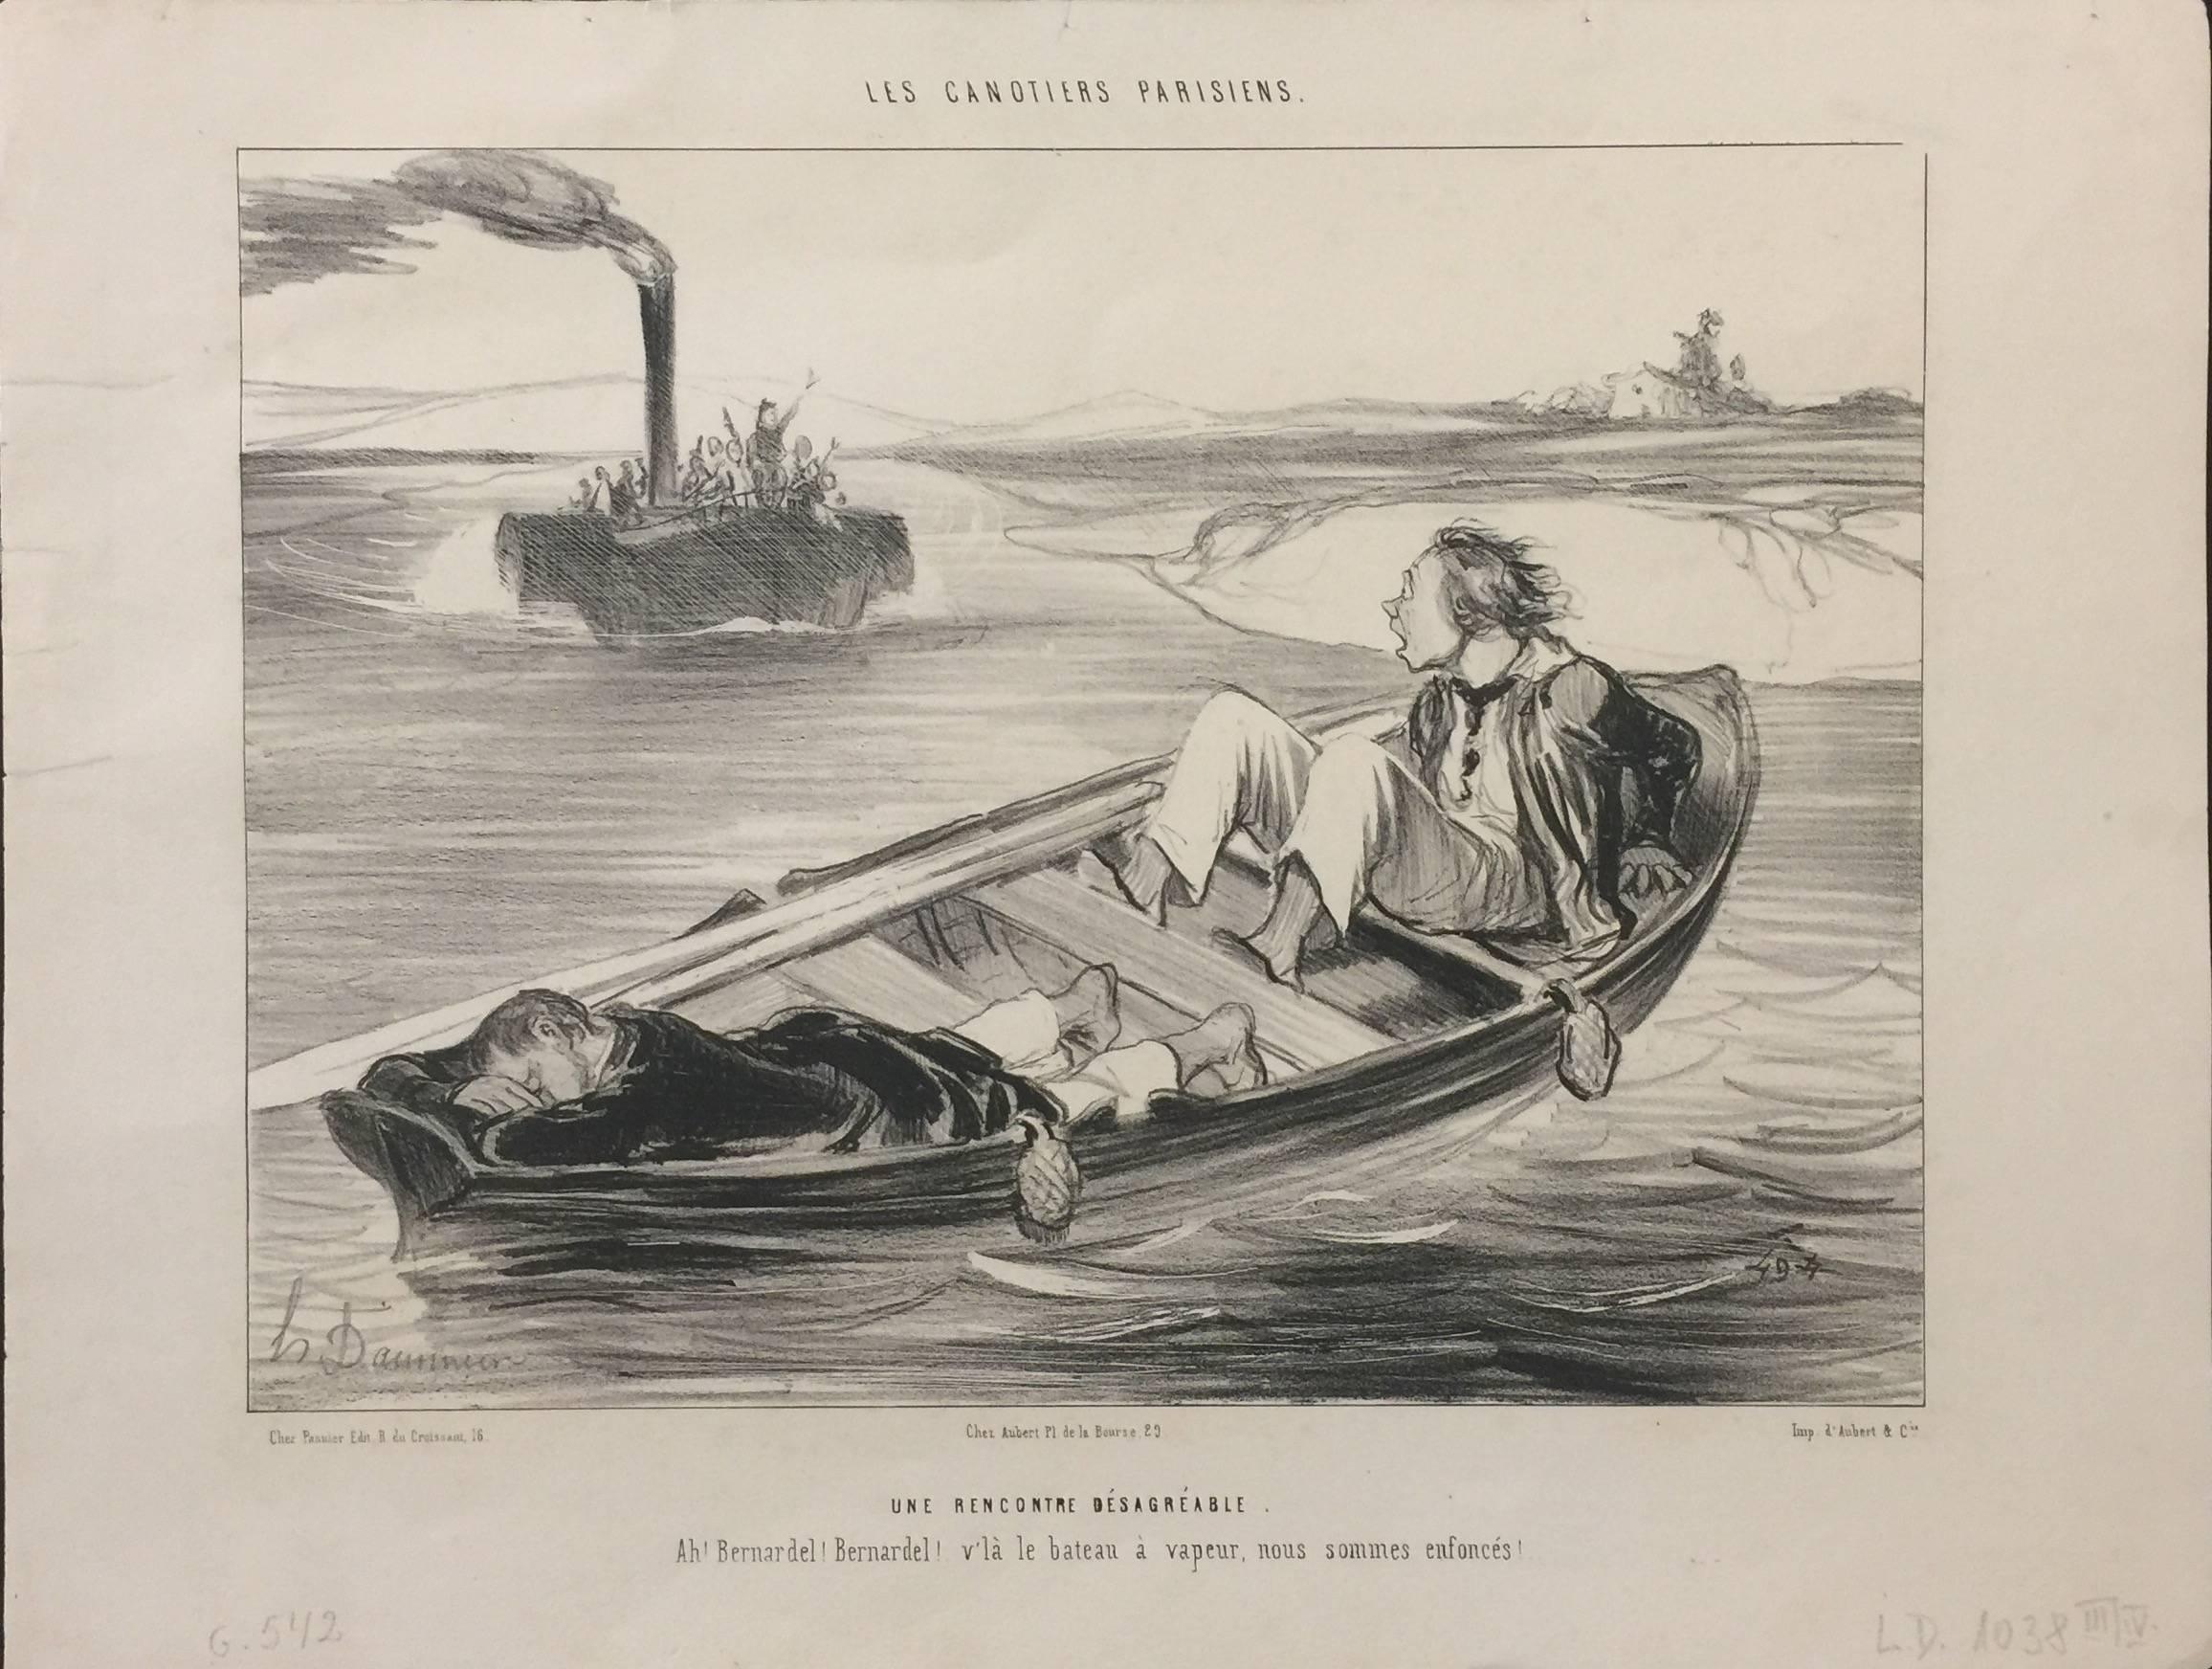 Honoré Daumier Figurative Print - Les Canotiers Parisiens - Une Rencontre désagréable